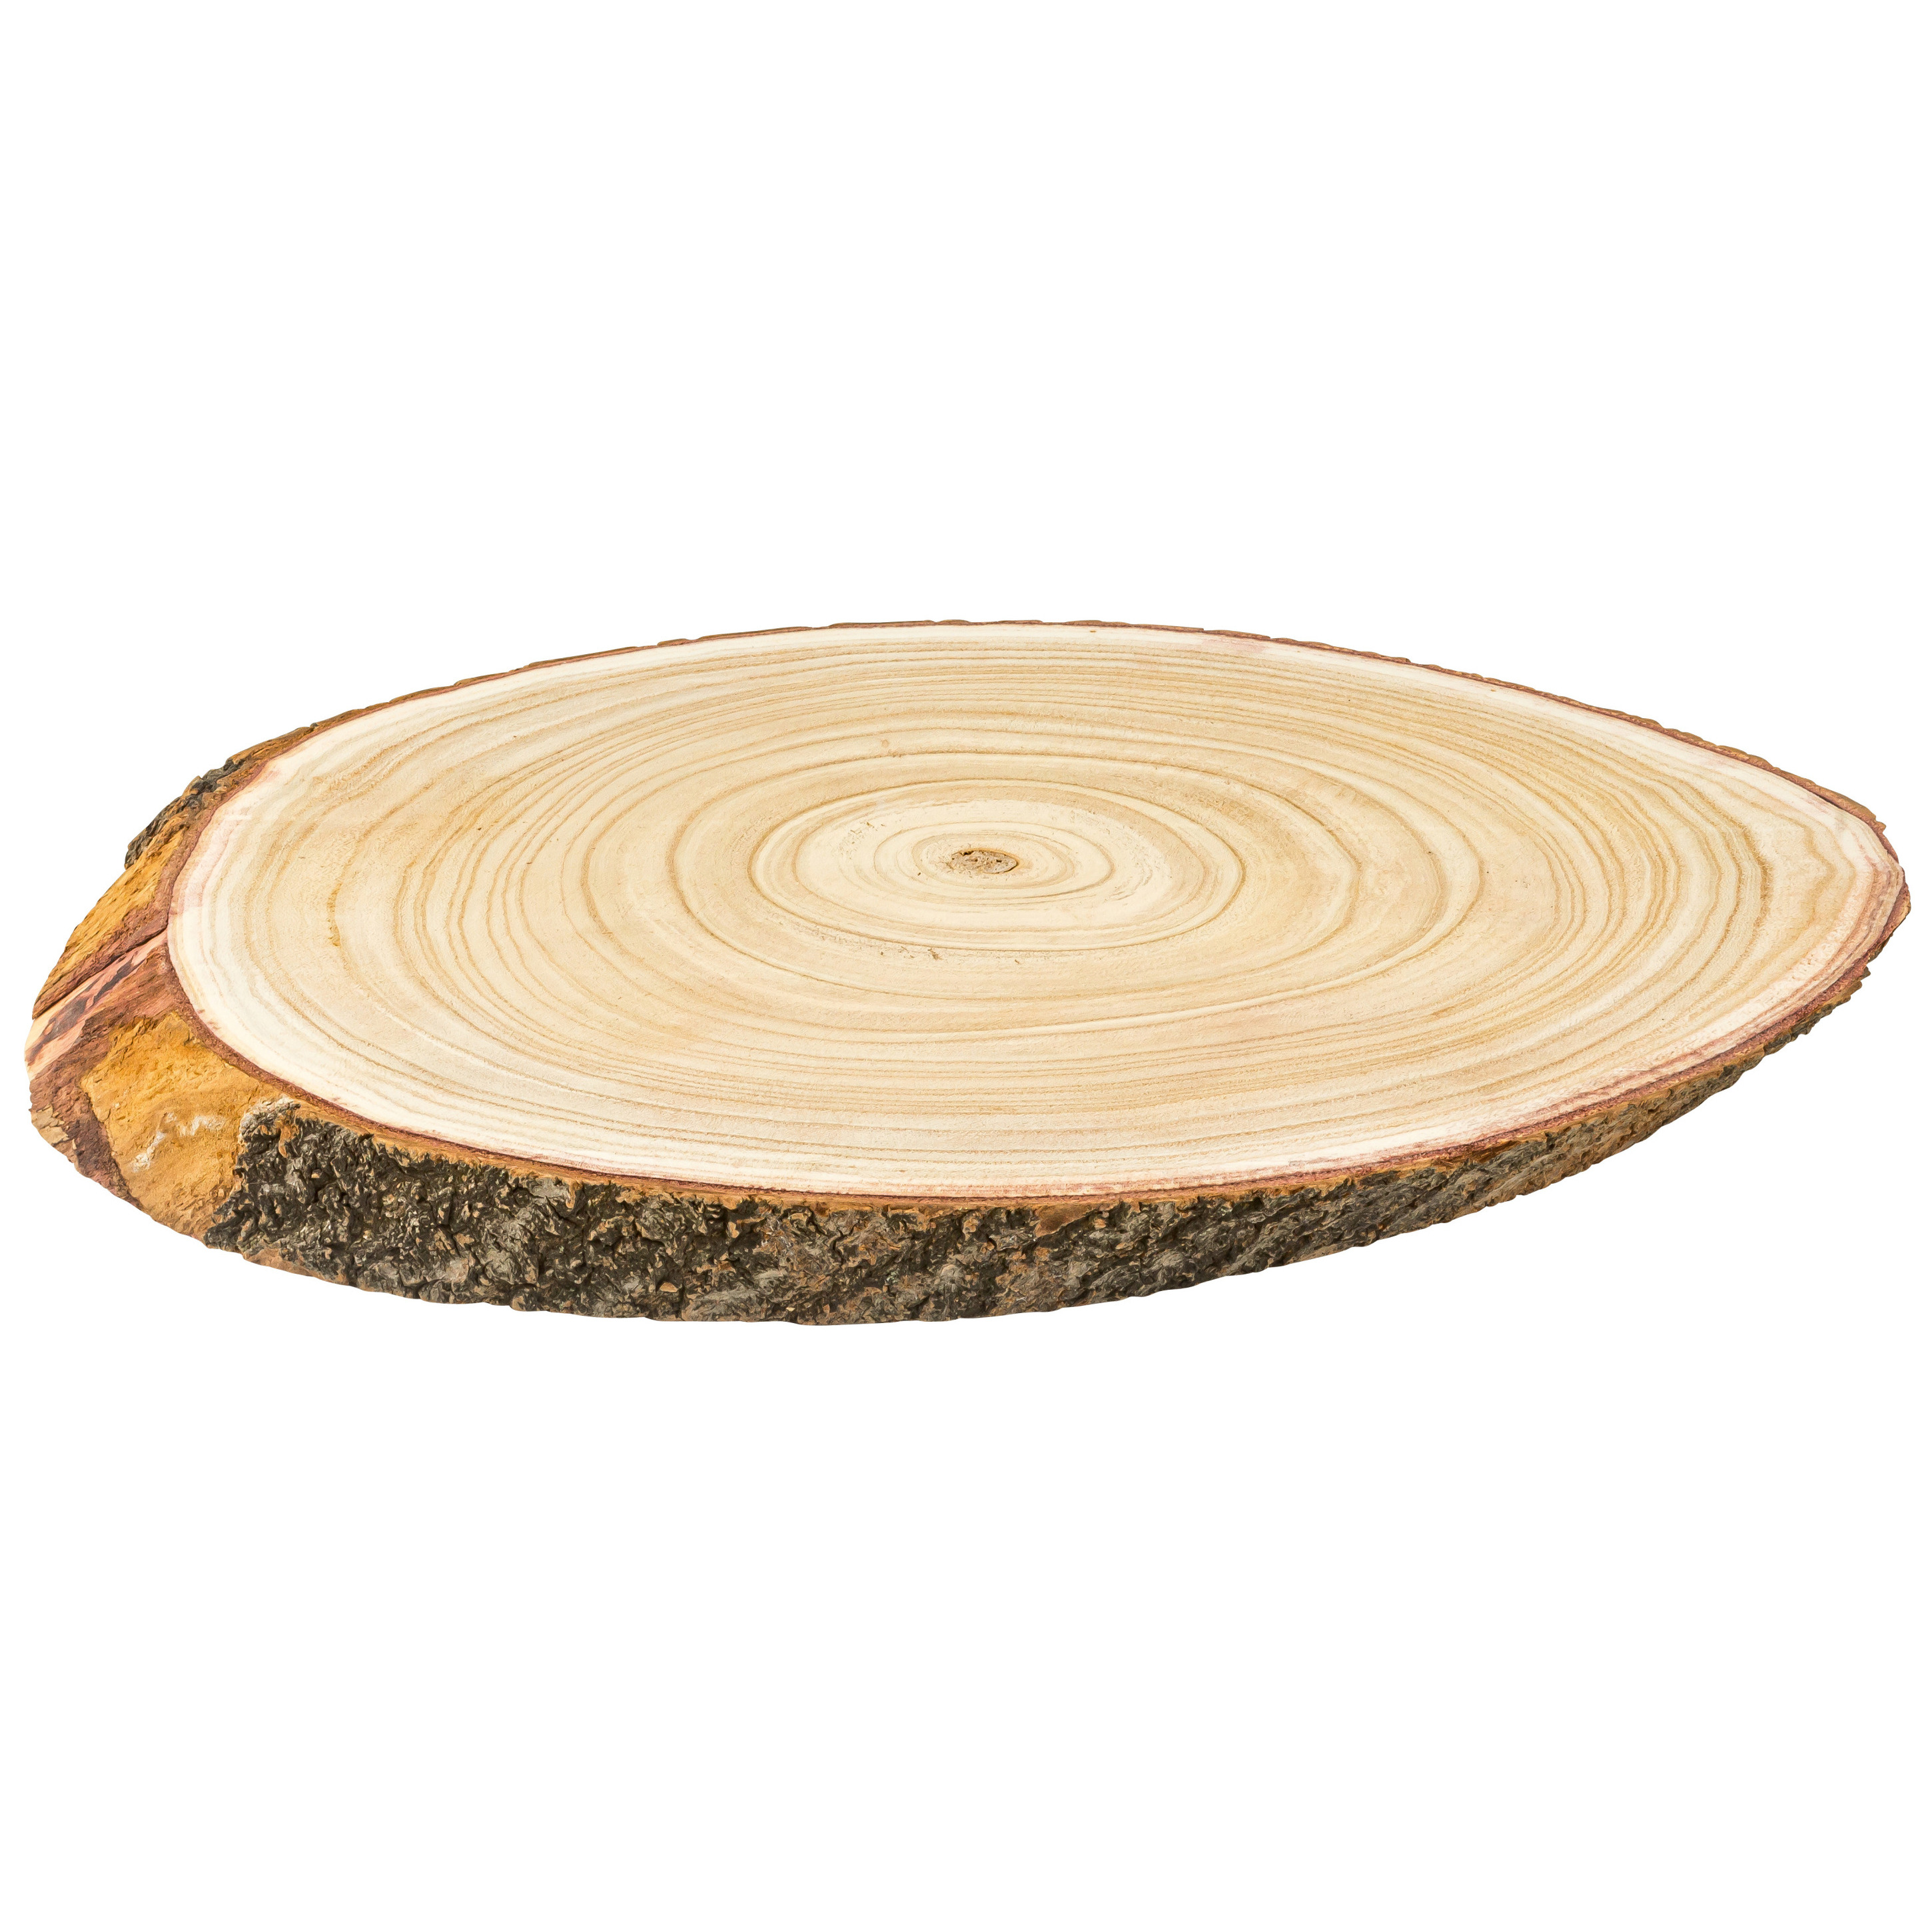 Kaarsenplateau-kaarsenbord boomschijf hout 51 x 32 x 4 cm ovaal